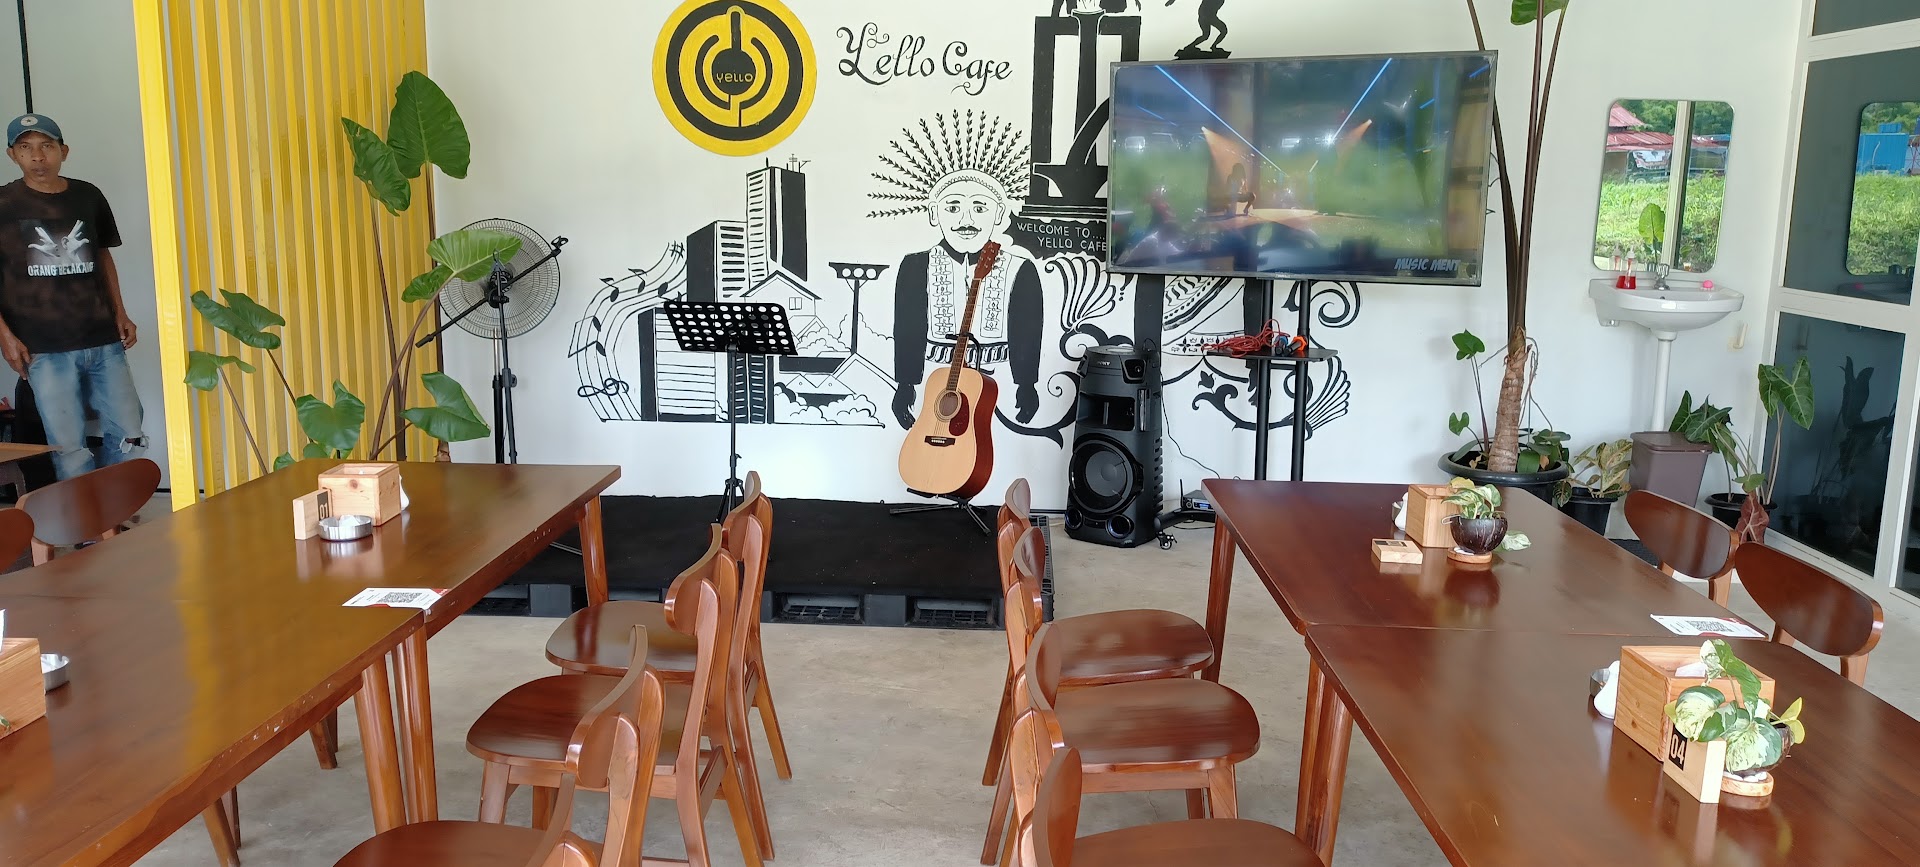 Gambar Yello Cafe Jakarta